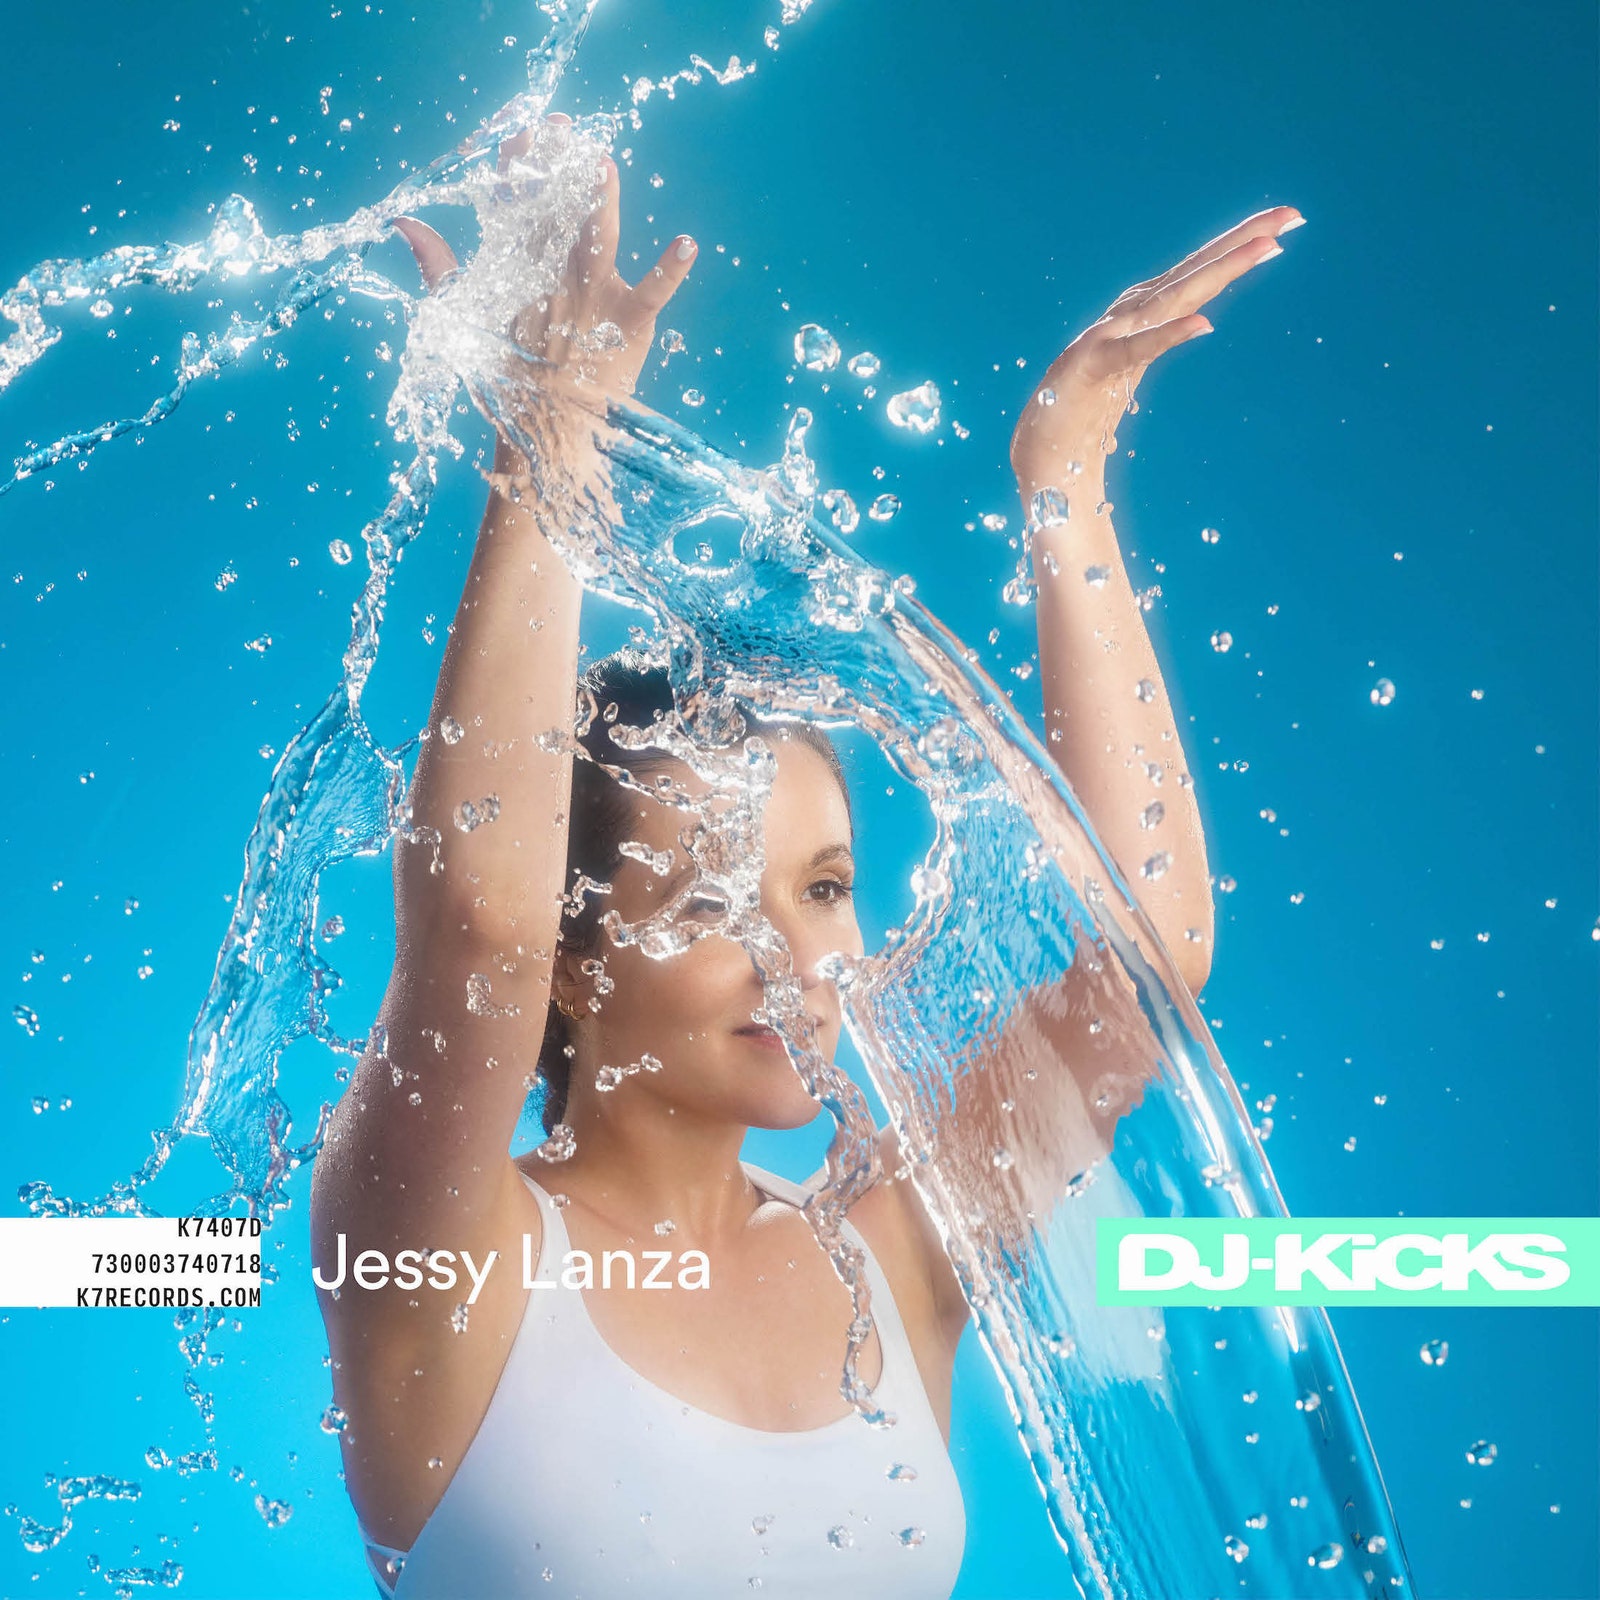 Jessy-Lanza-DJ-Kicks